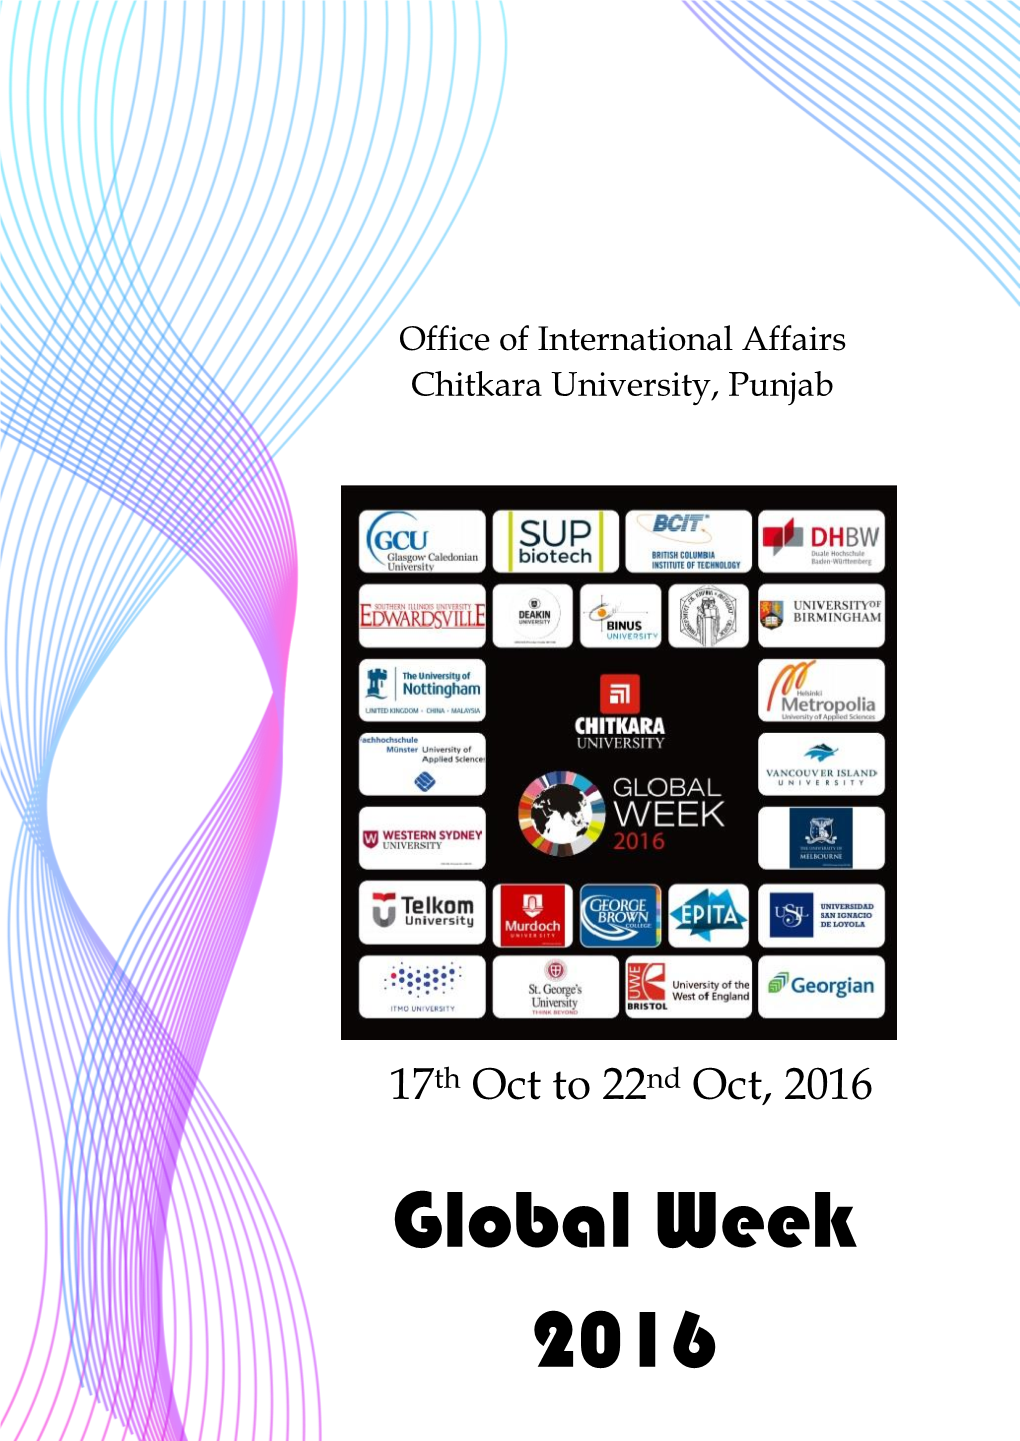 Global Week 2016